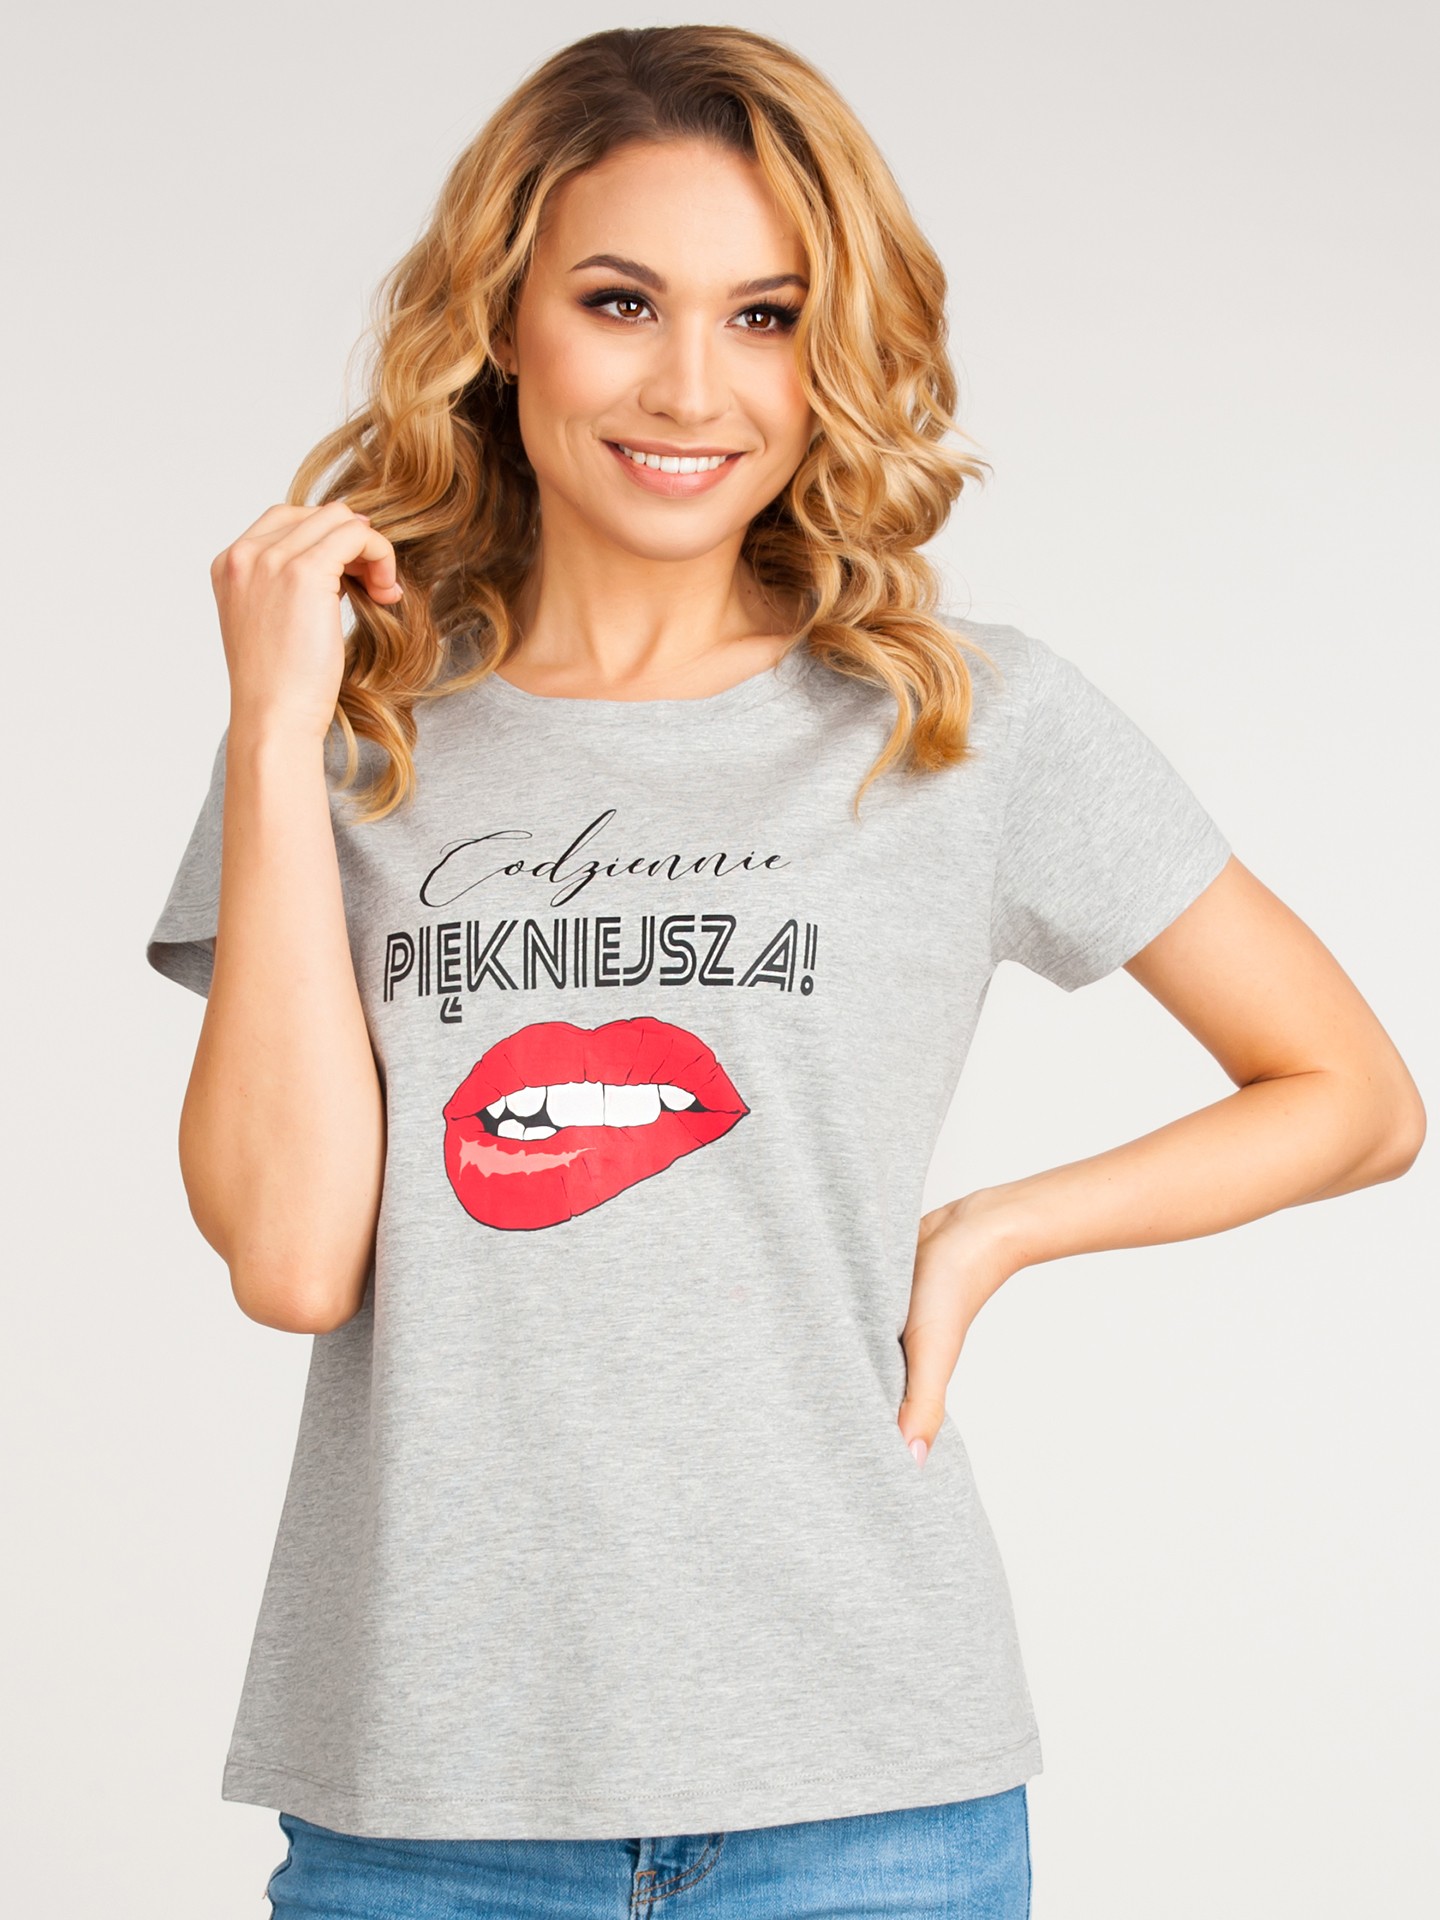 Yoclub Woman's Cotton T-shirt PKK-0102K-A110